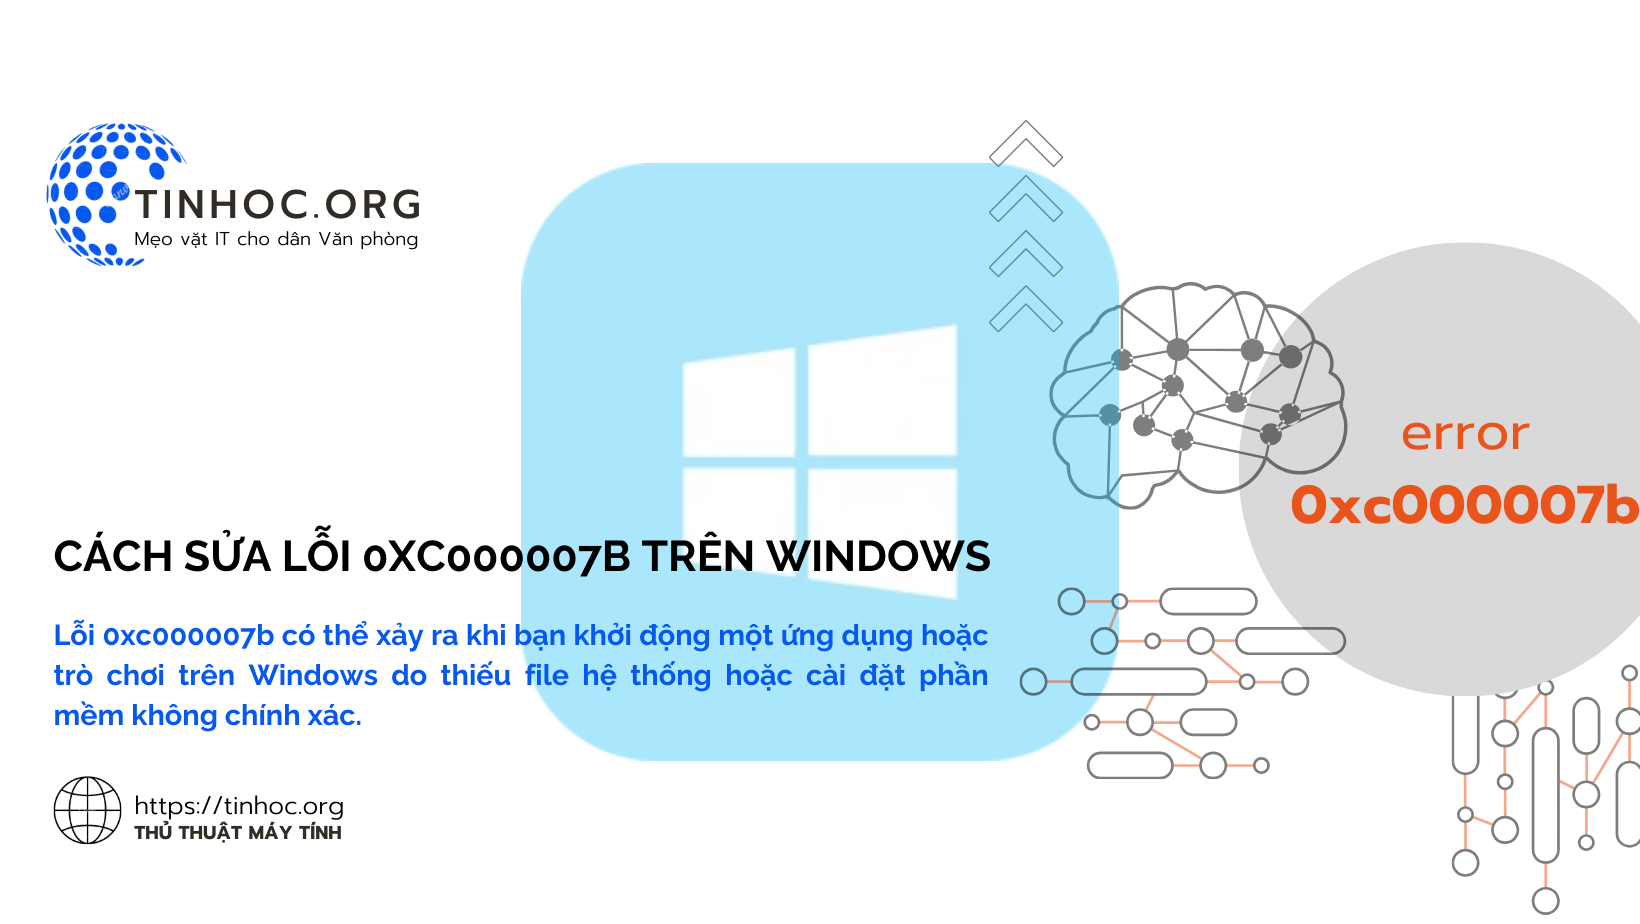 Lỗi 0xc000007b có thể xảy ra khi bạn khởi động một ứng dụng hoặc trò chơi trên Windows do thiếu file hệ thống hoặc cài đặt phần mềm không chính xác.